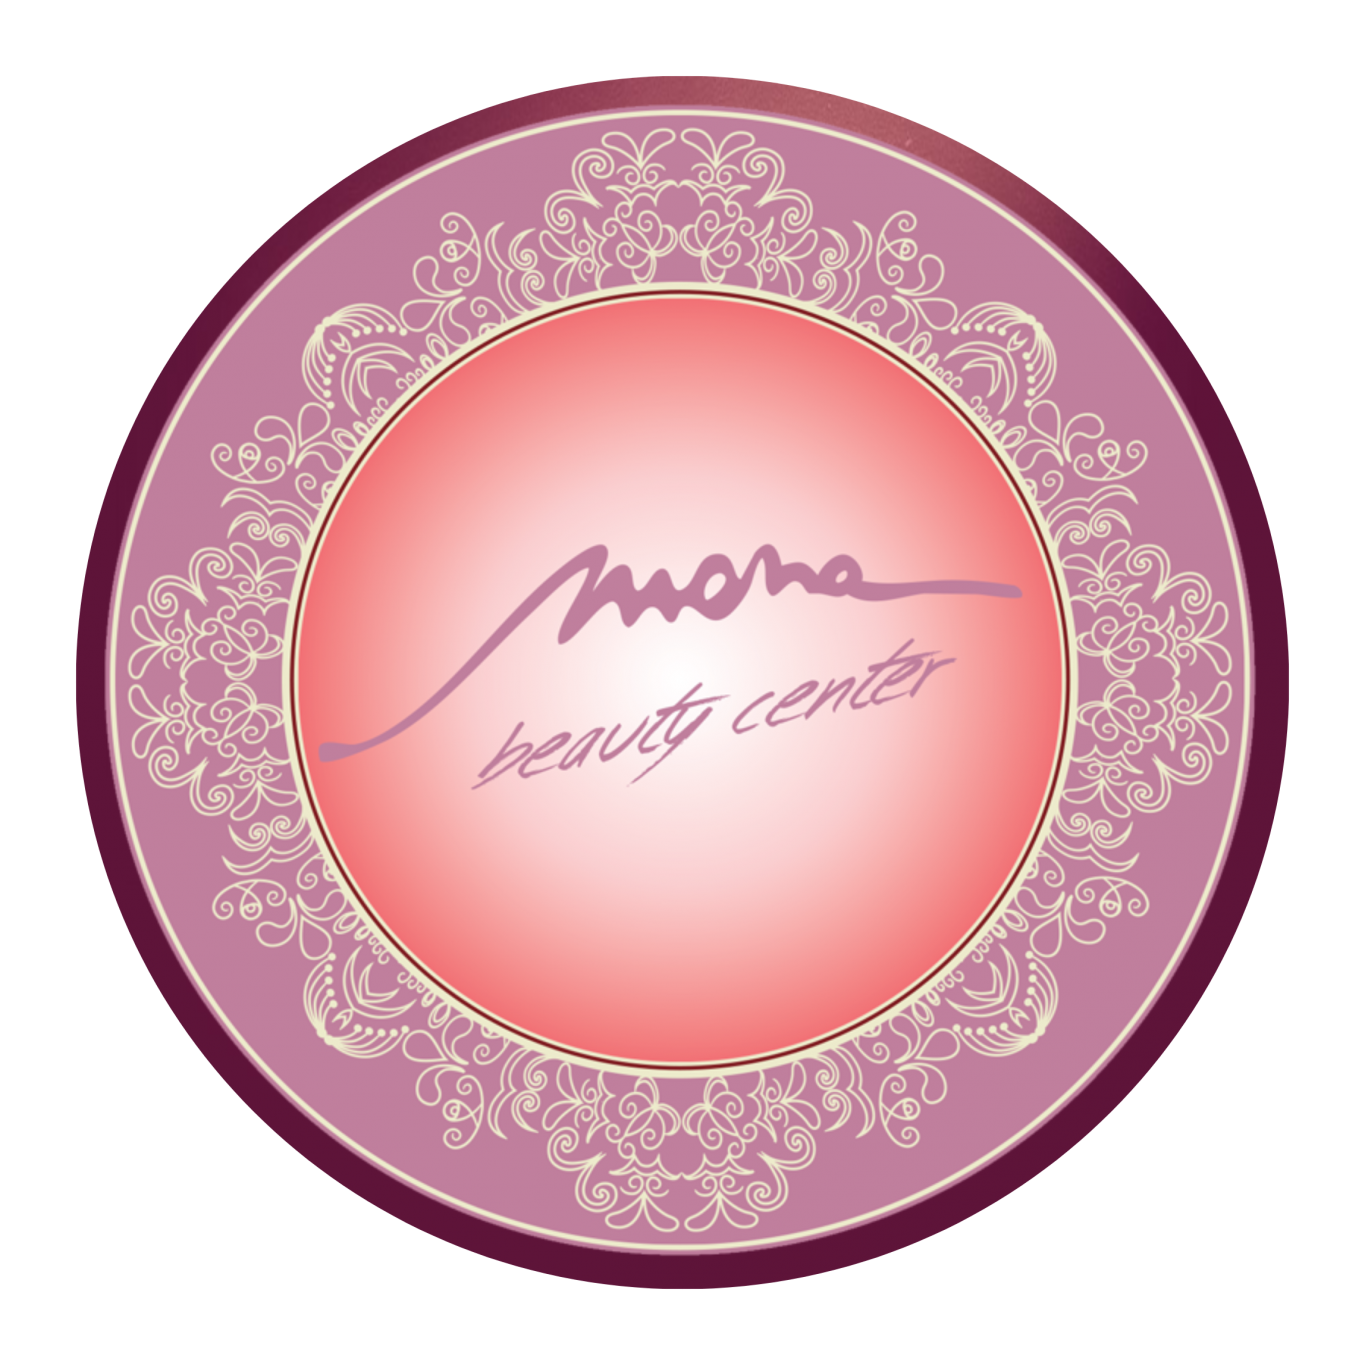 Mona Al Amil Beauty Center